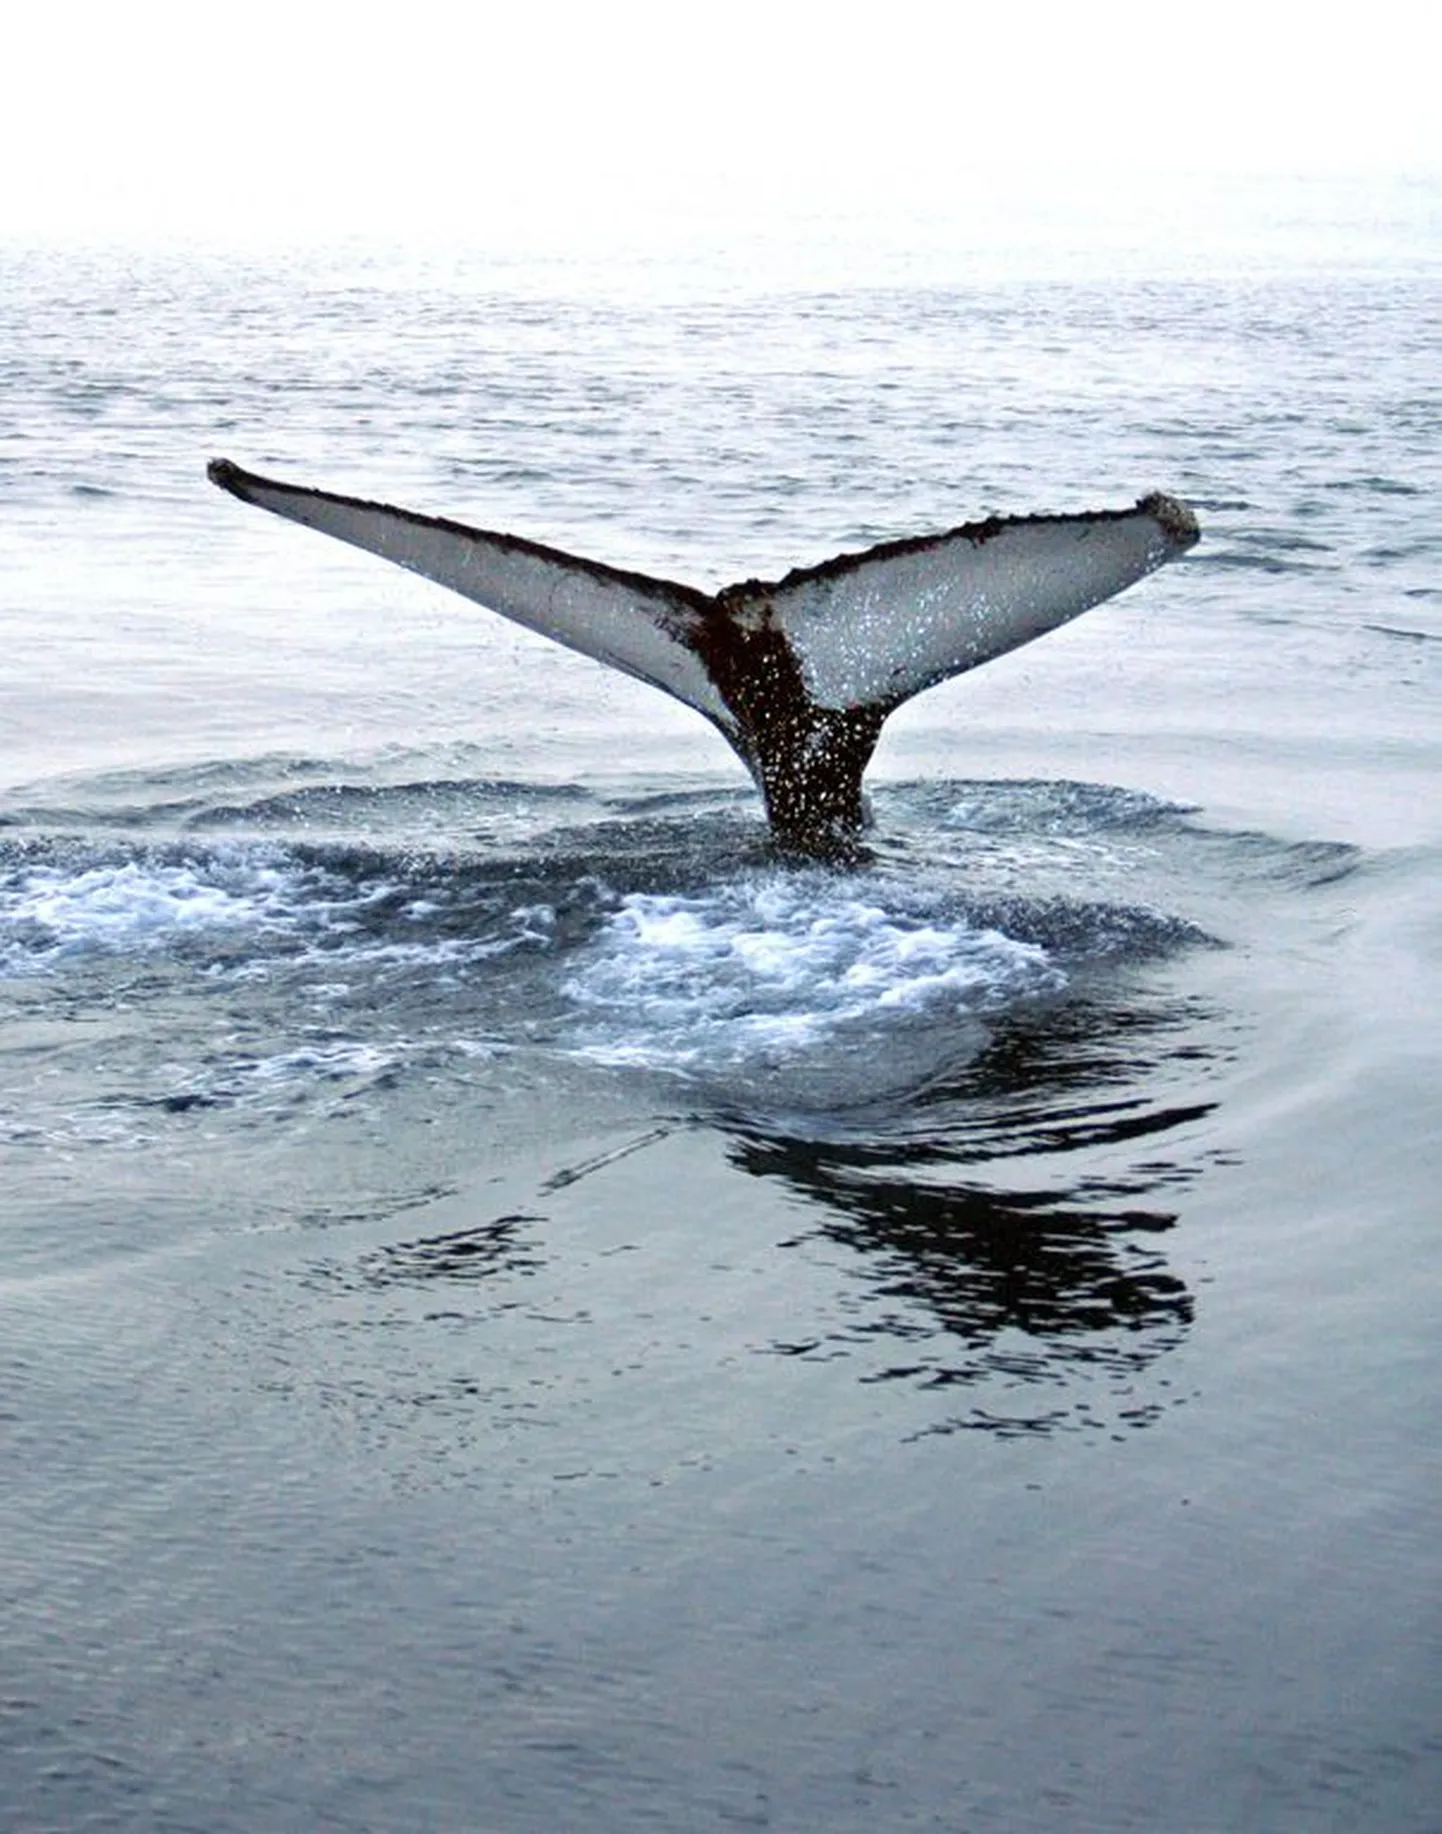 "Синий кит", как утверждается, дошел до Эстонии.